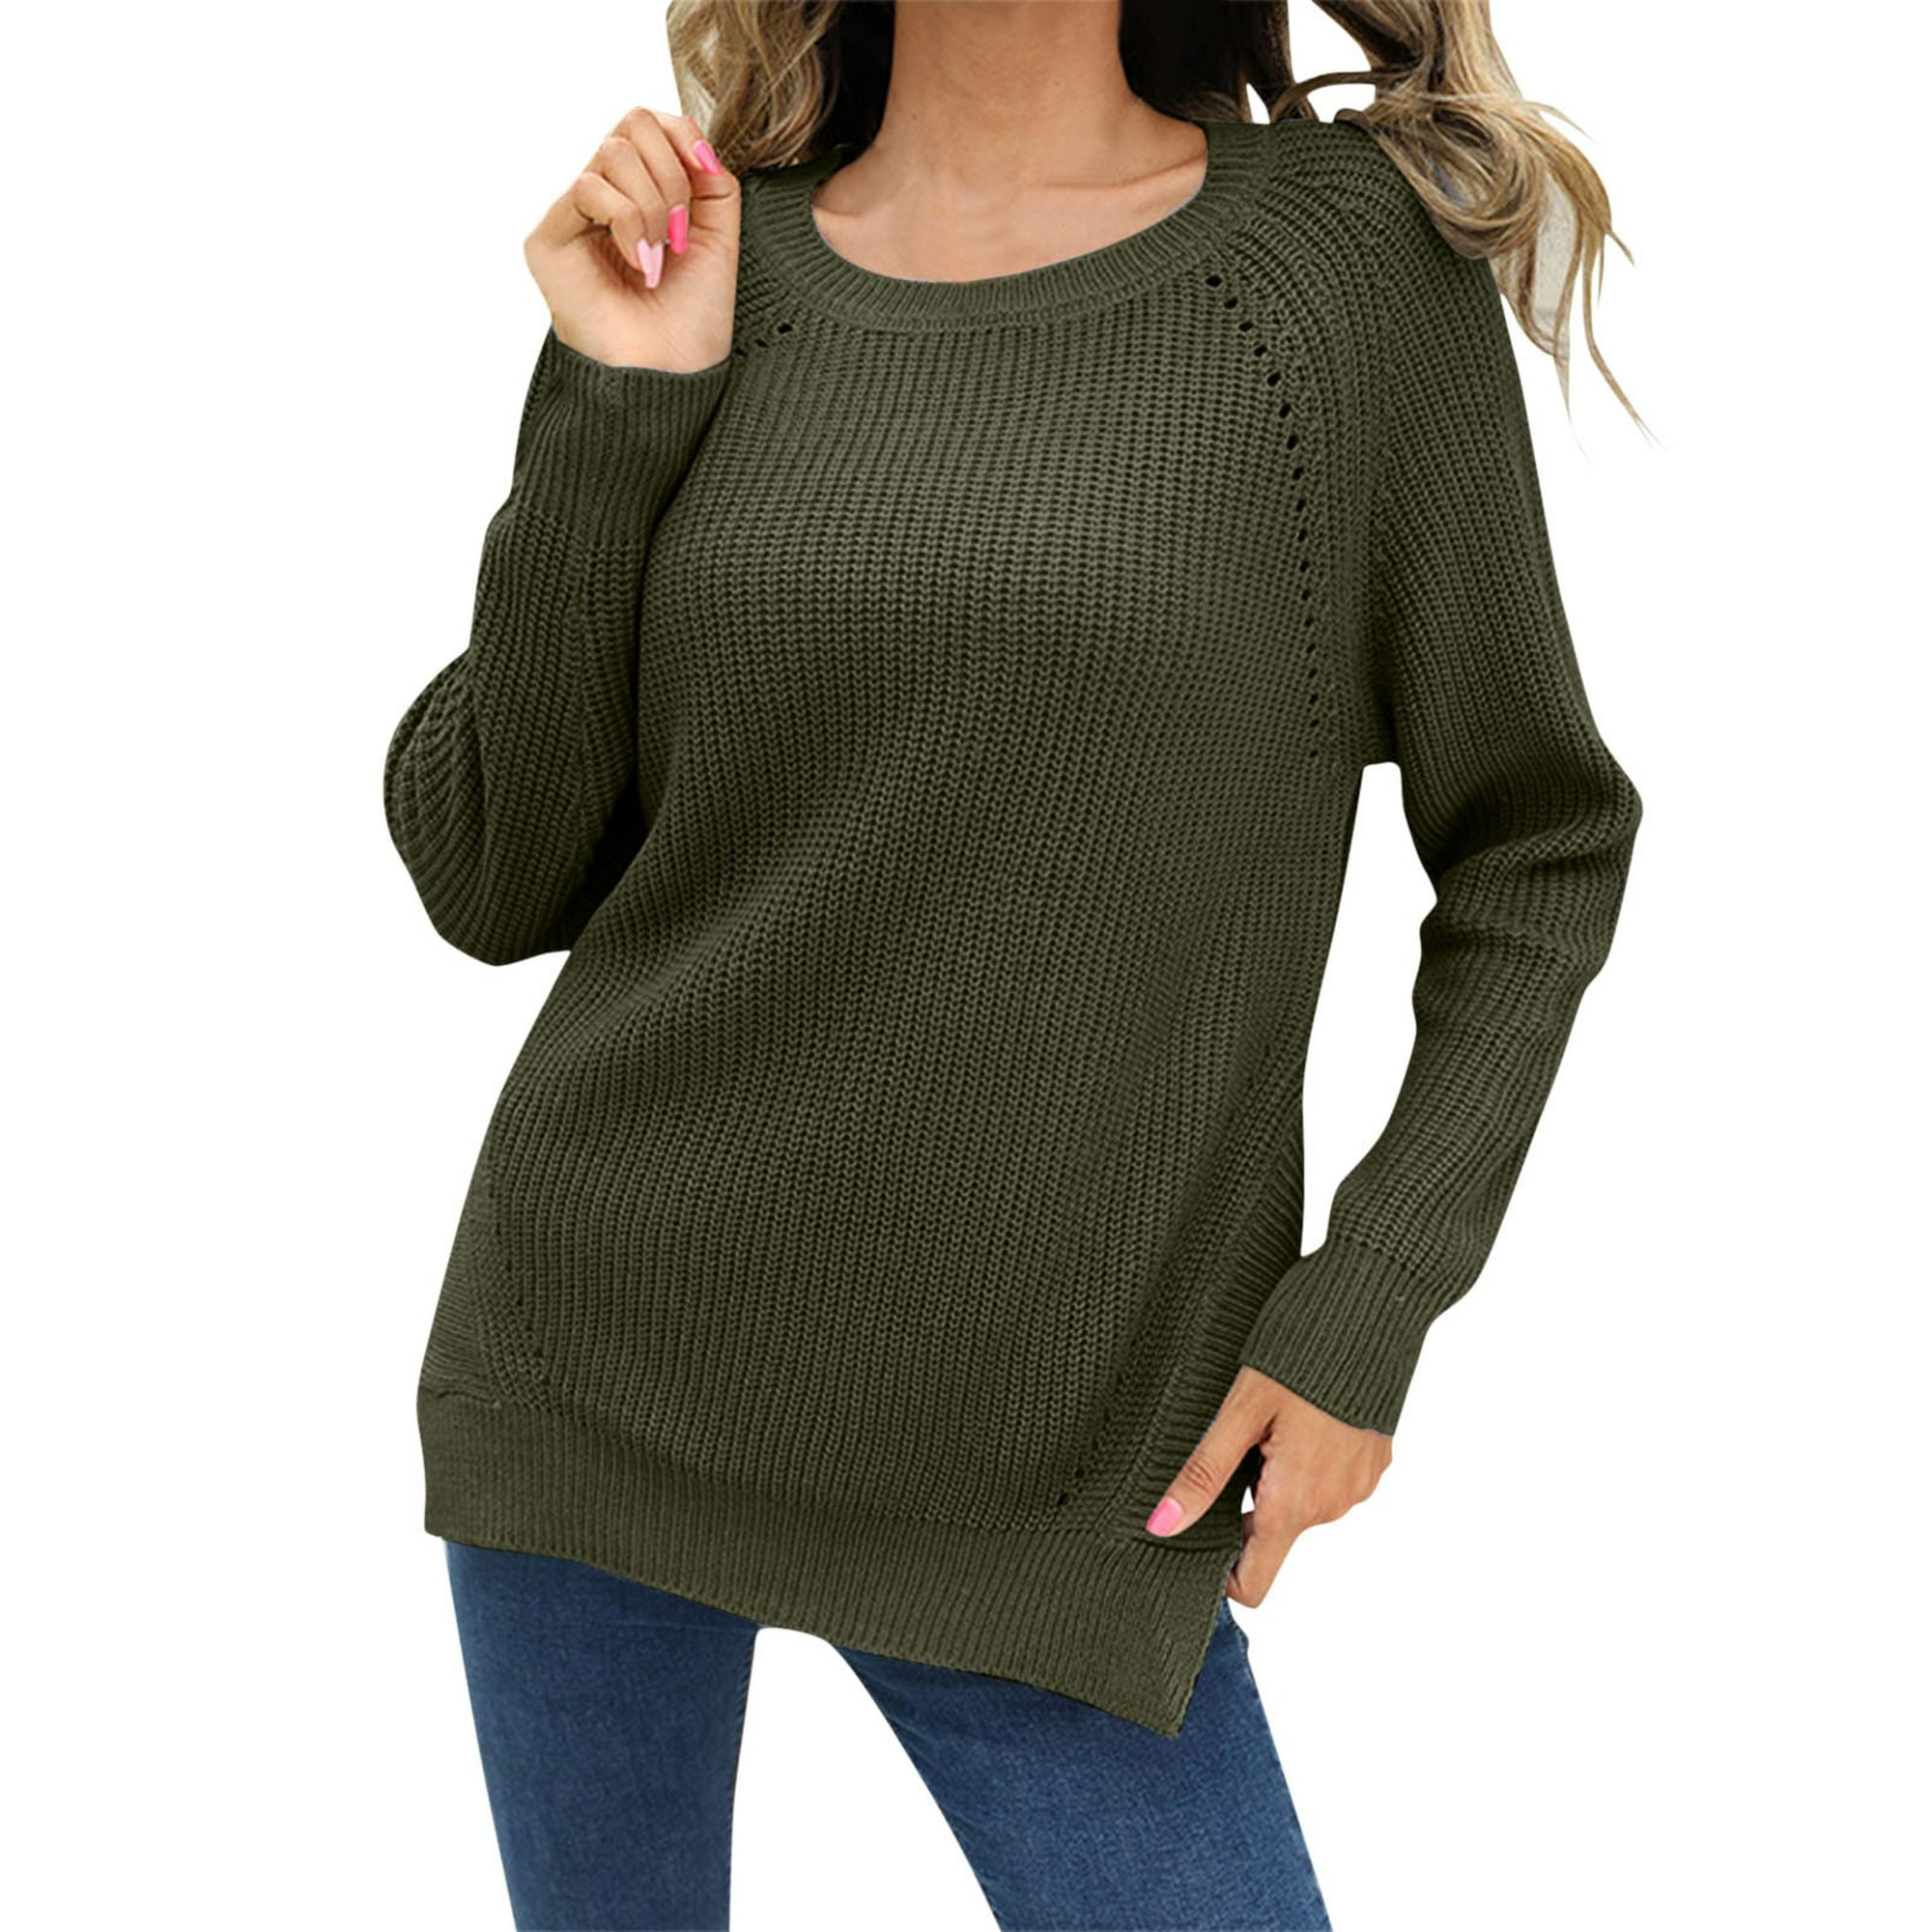 Essentials - Suéter ligero y acanalado de manga larga con cuello  bote para mujer